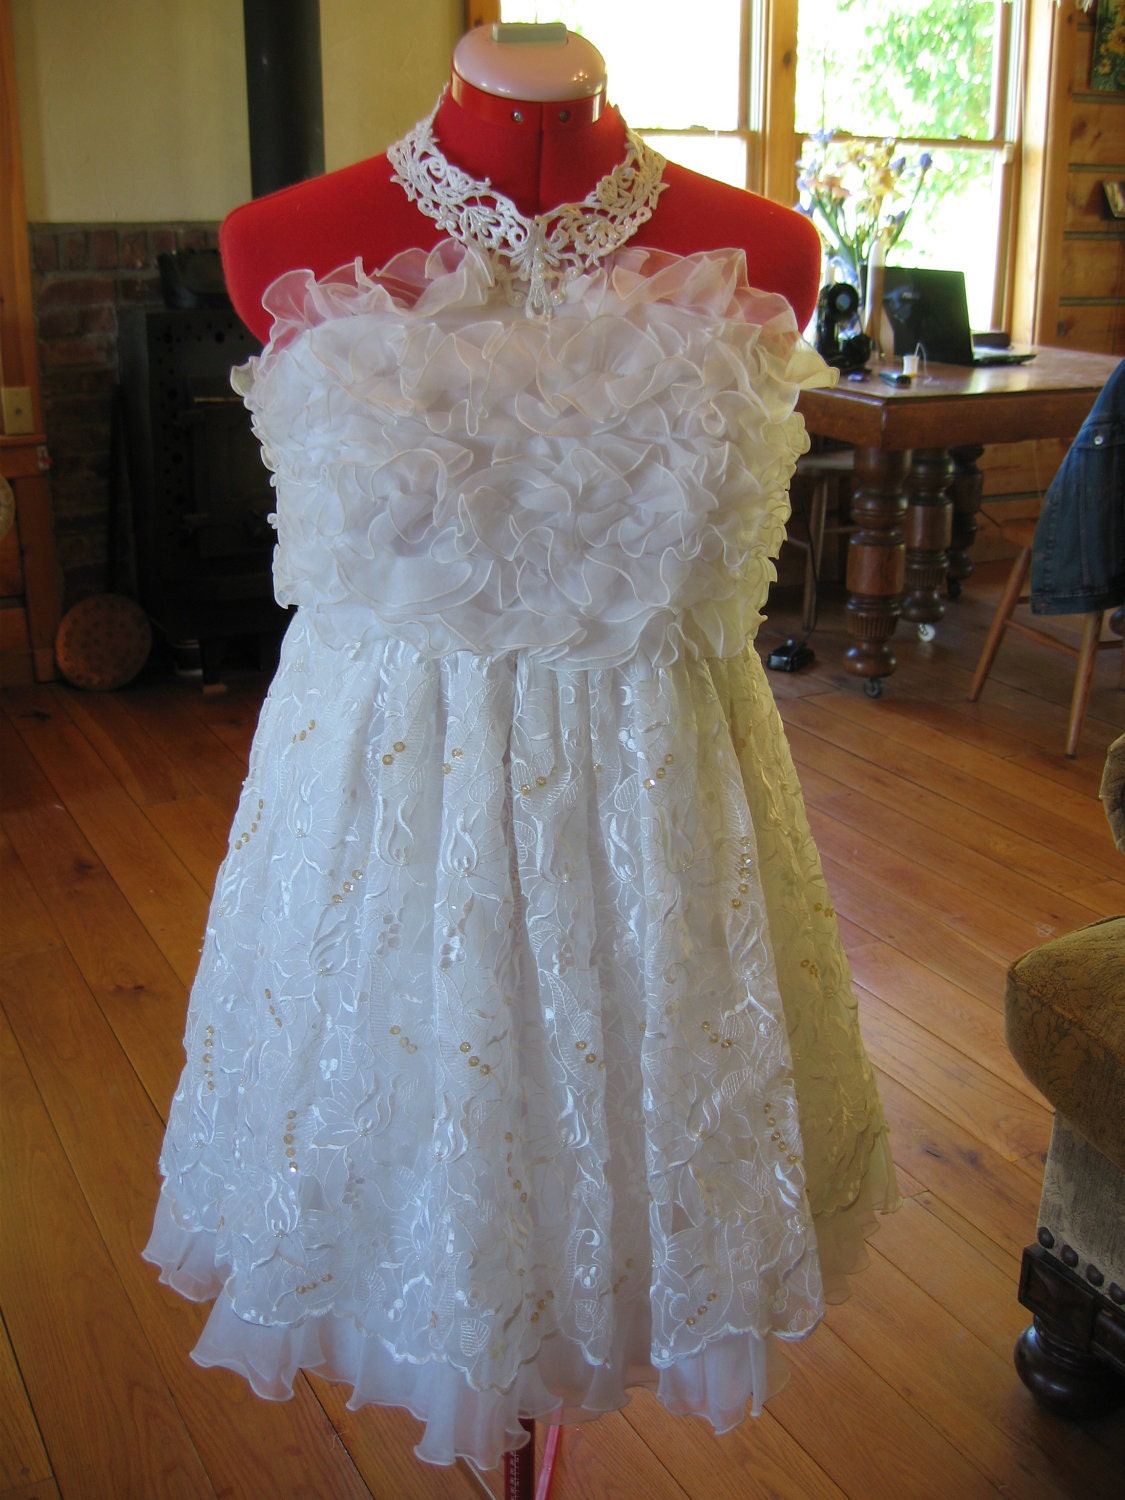 upcycled wedding dress